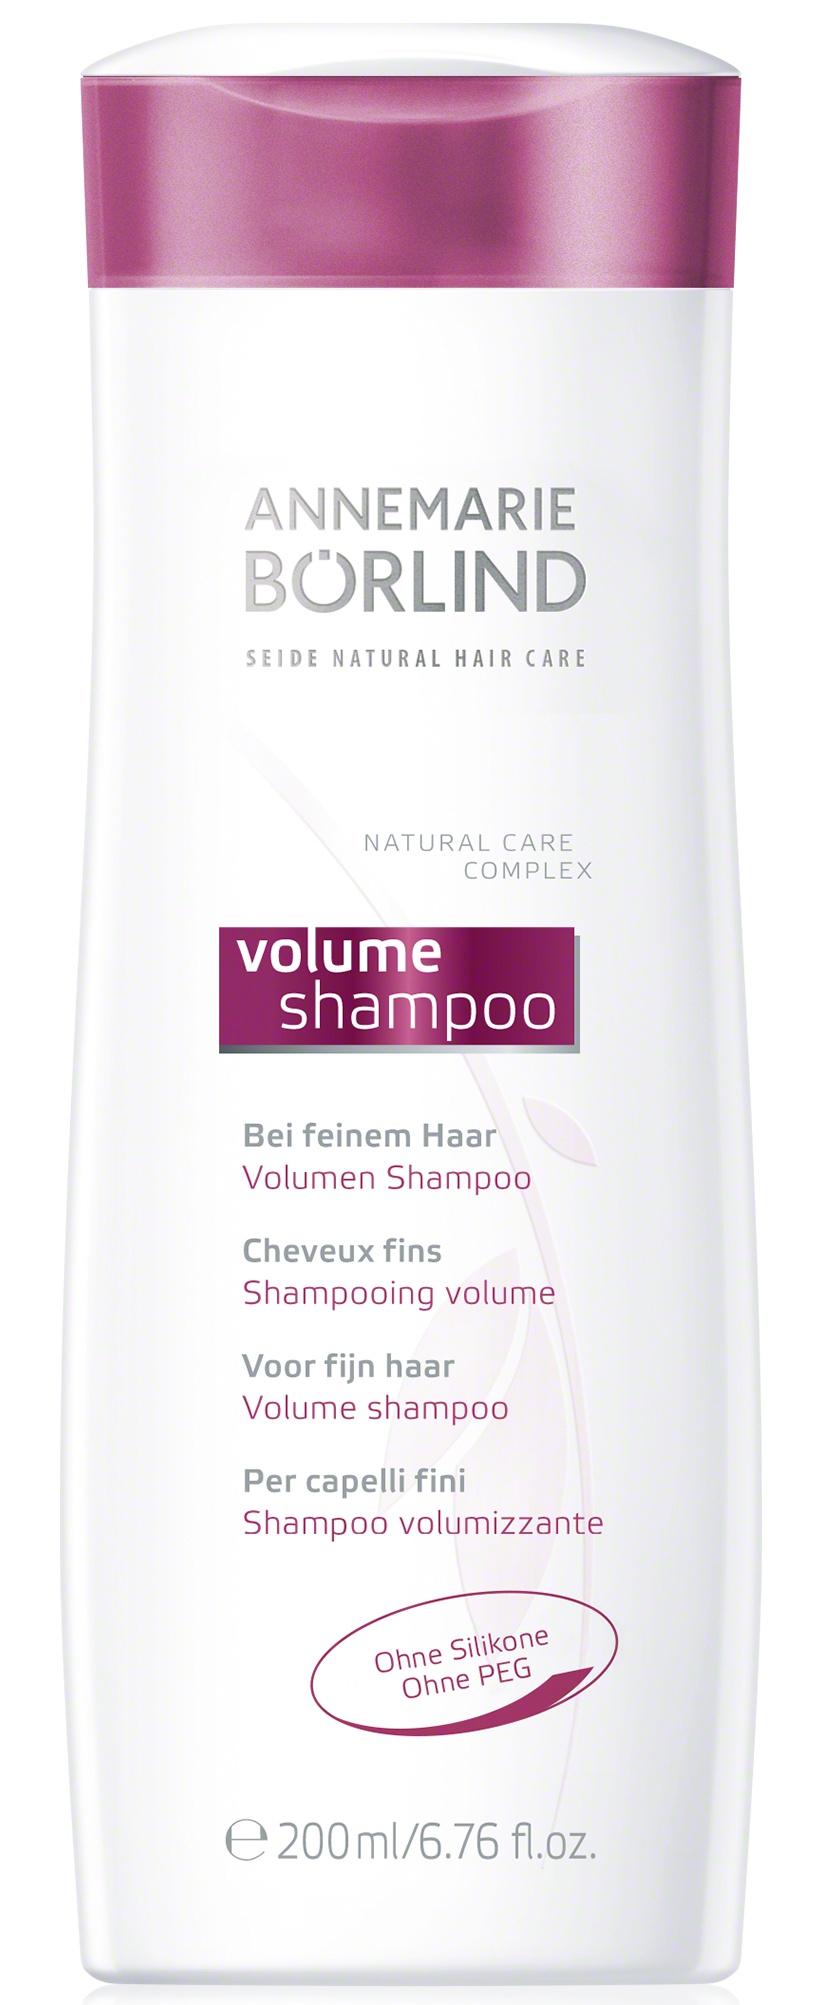 Annemarie Börlind Seide Natural Hair Care Volume Shampoo